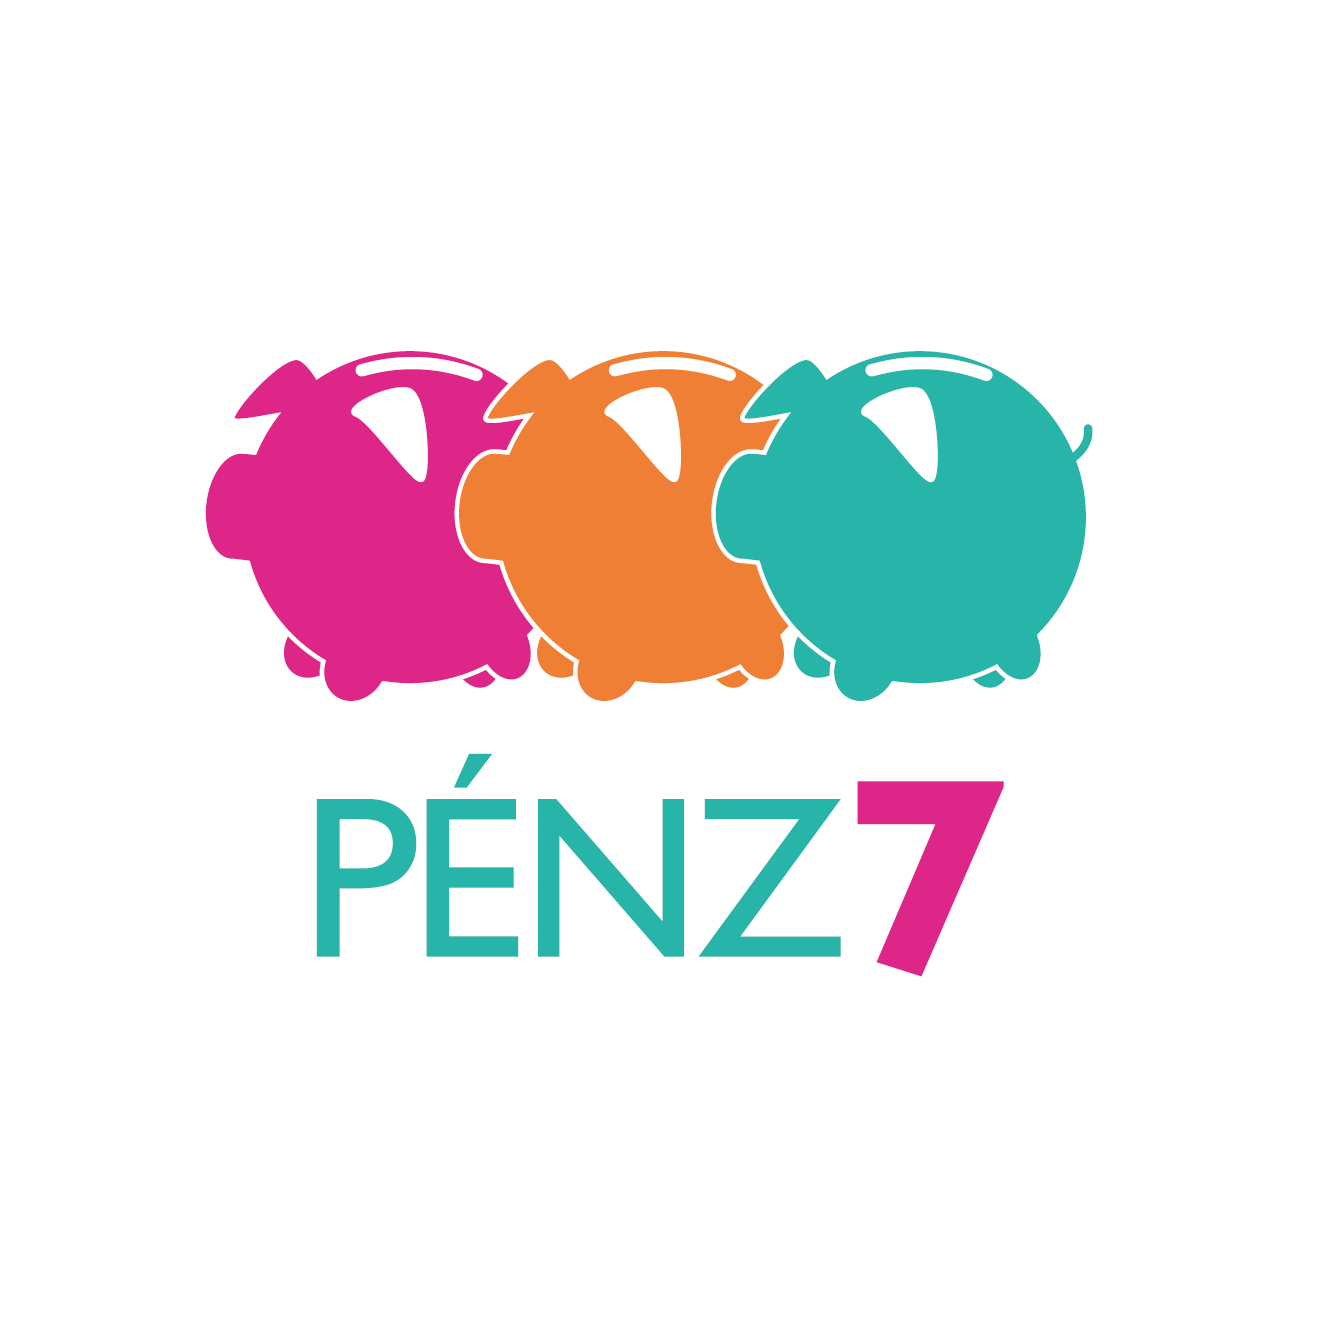 Pénz7 logo